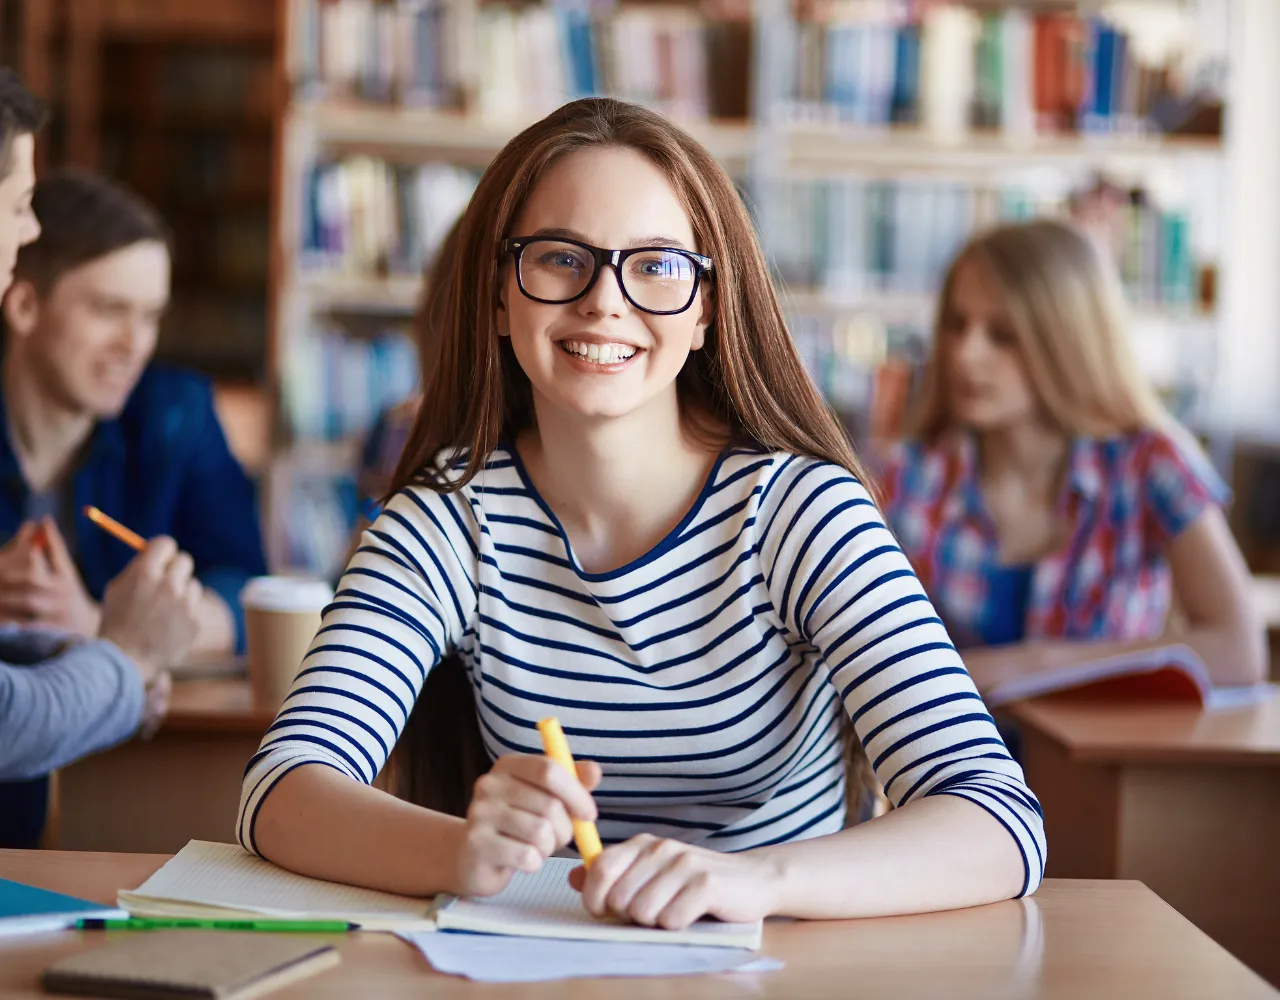 Jovem de óculos e camisa listrada sorri para a câmera enquanto está sentada à mesa em uma biblioteca com colegas ao fundo.